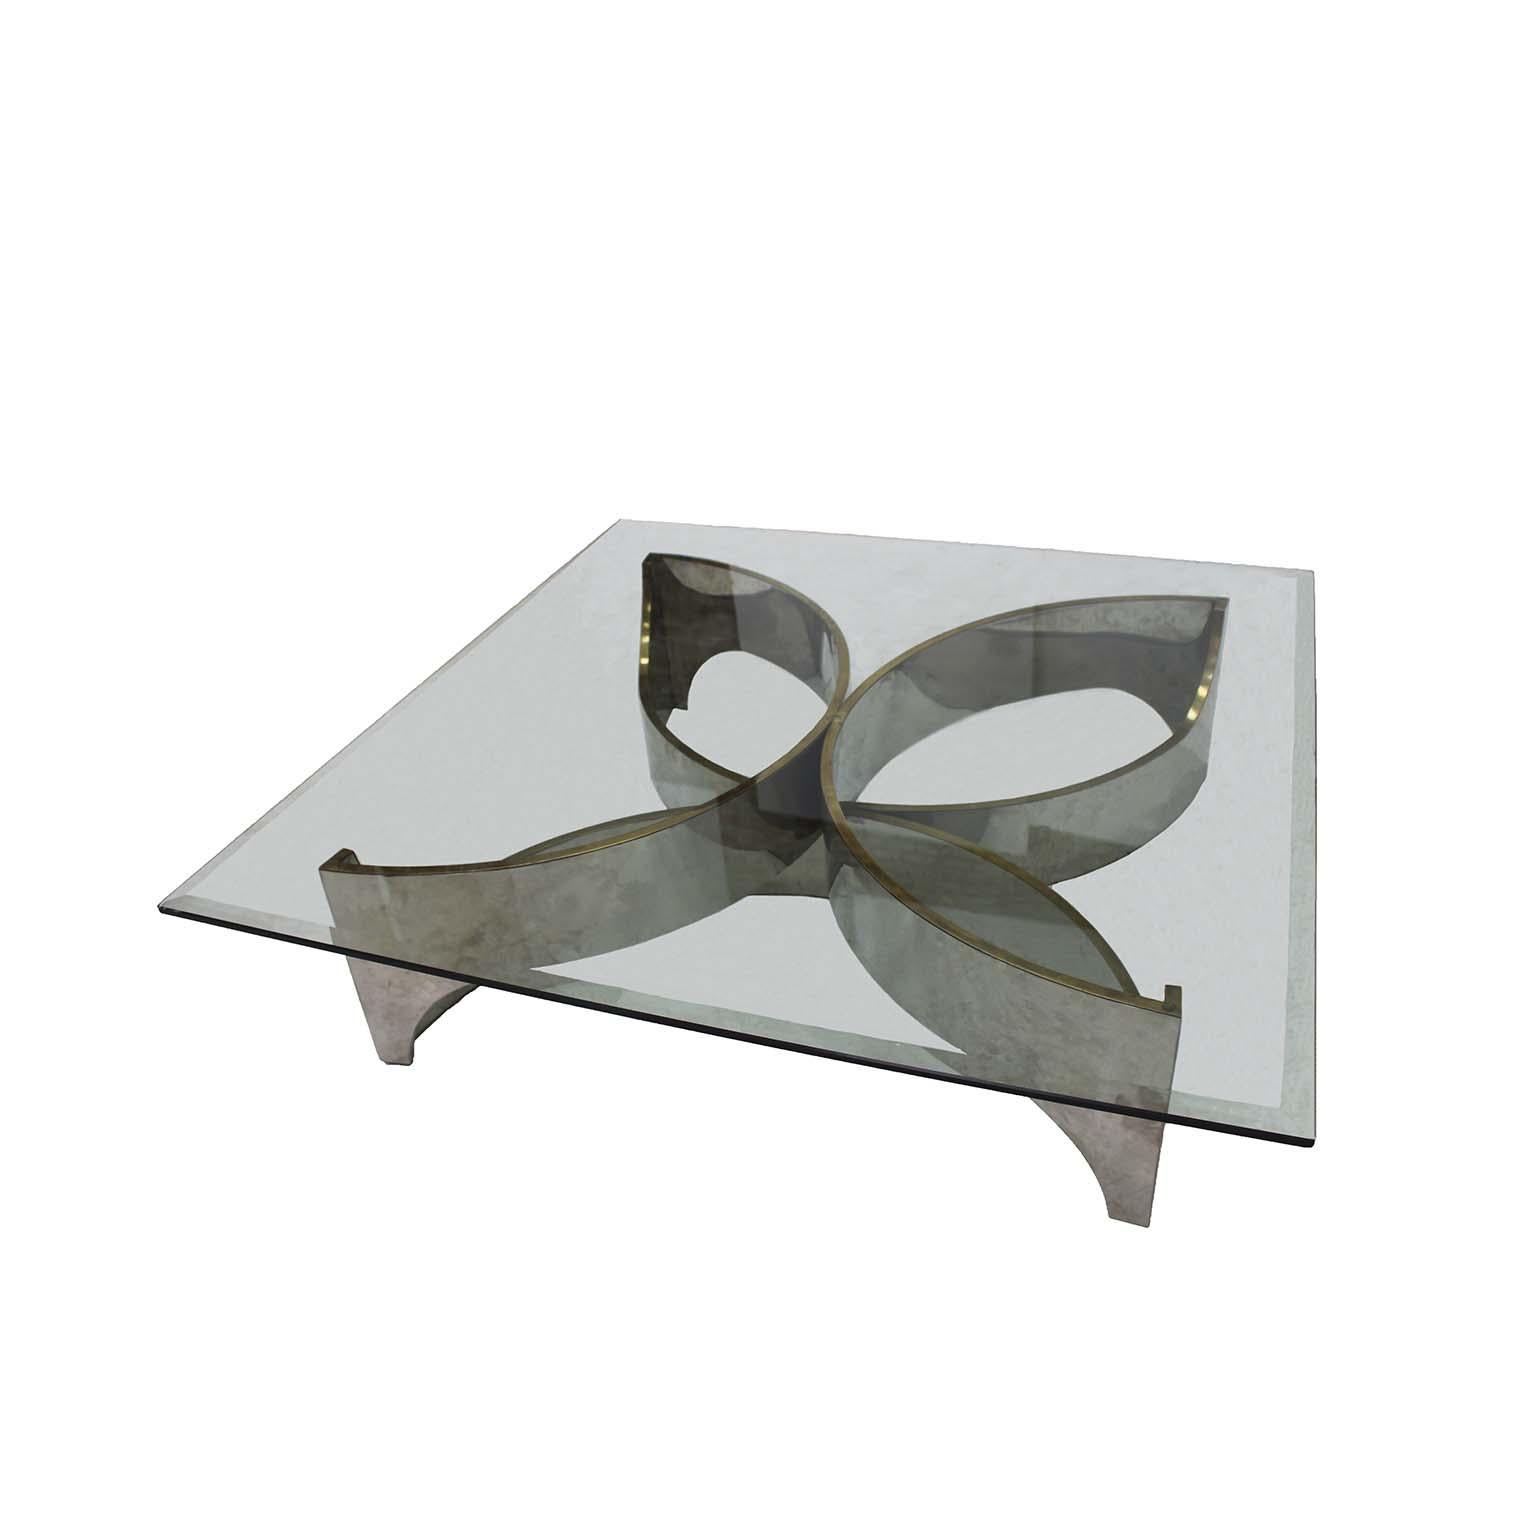 Frank Stella zugeschriebener Mitteltisch mit blumenförmiger Struktur aus verchromtem Metall und transparenter Glasplatte. USA 80er Jahre.

Abmessungen: B 140 x T 140 x H 35 cm

Jeder Artikel, den LA Studio anbietet, wird von unserem 10-köpfigen Team